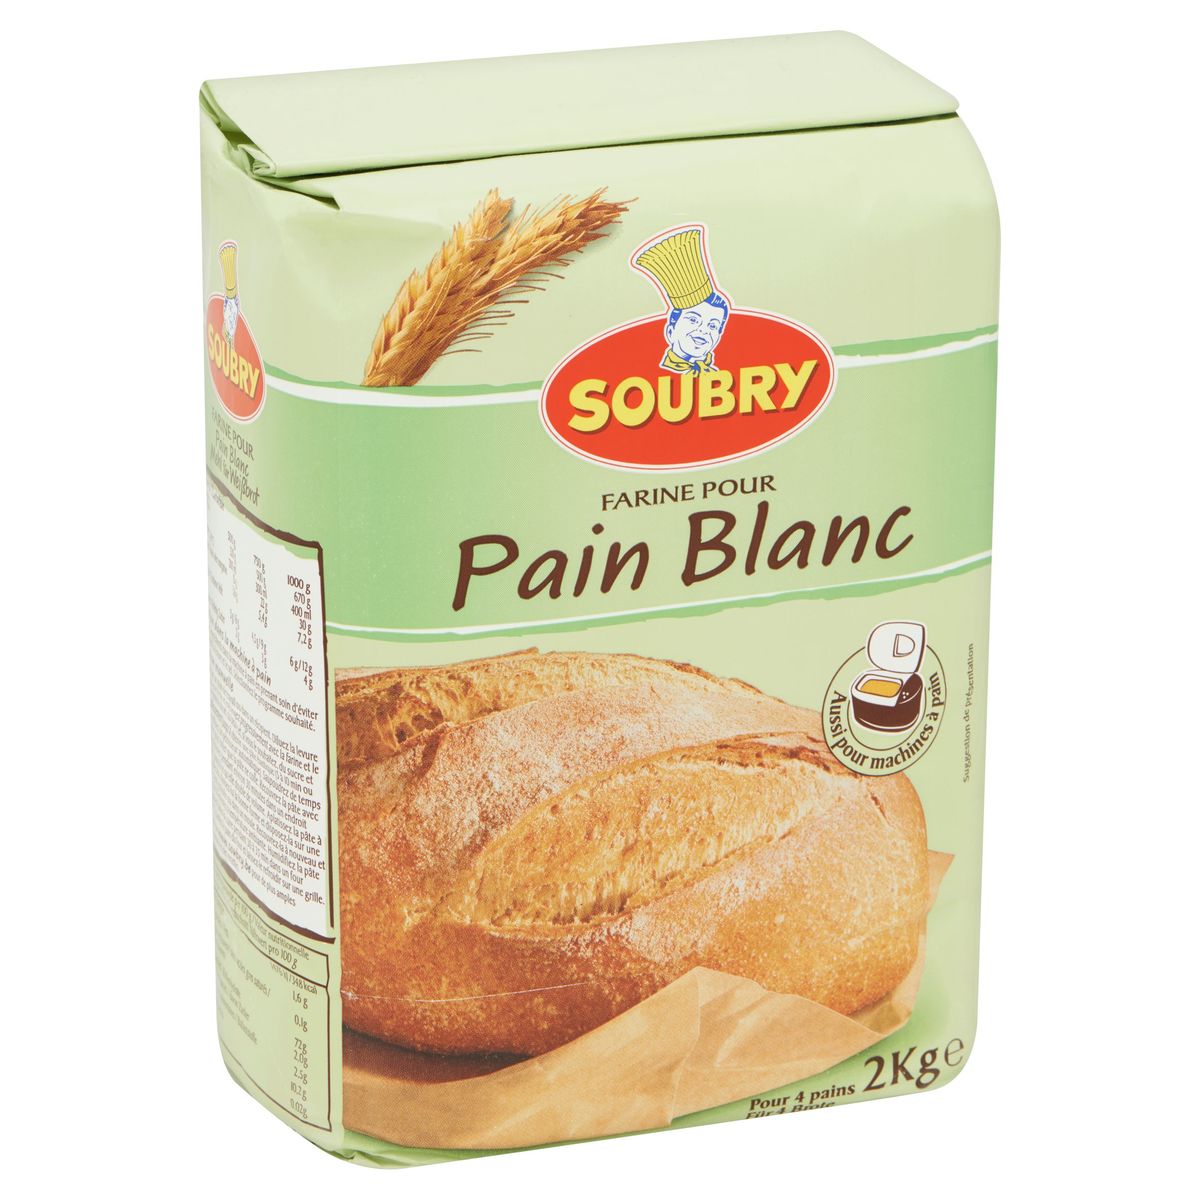 Soubry Farine pour Pain Blanc 2kg